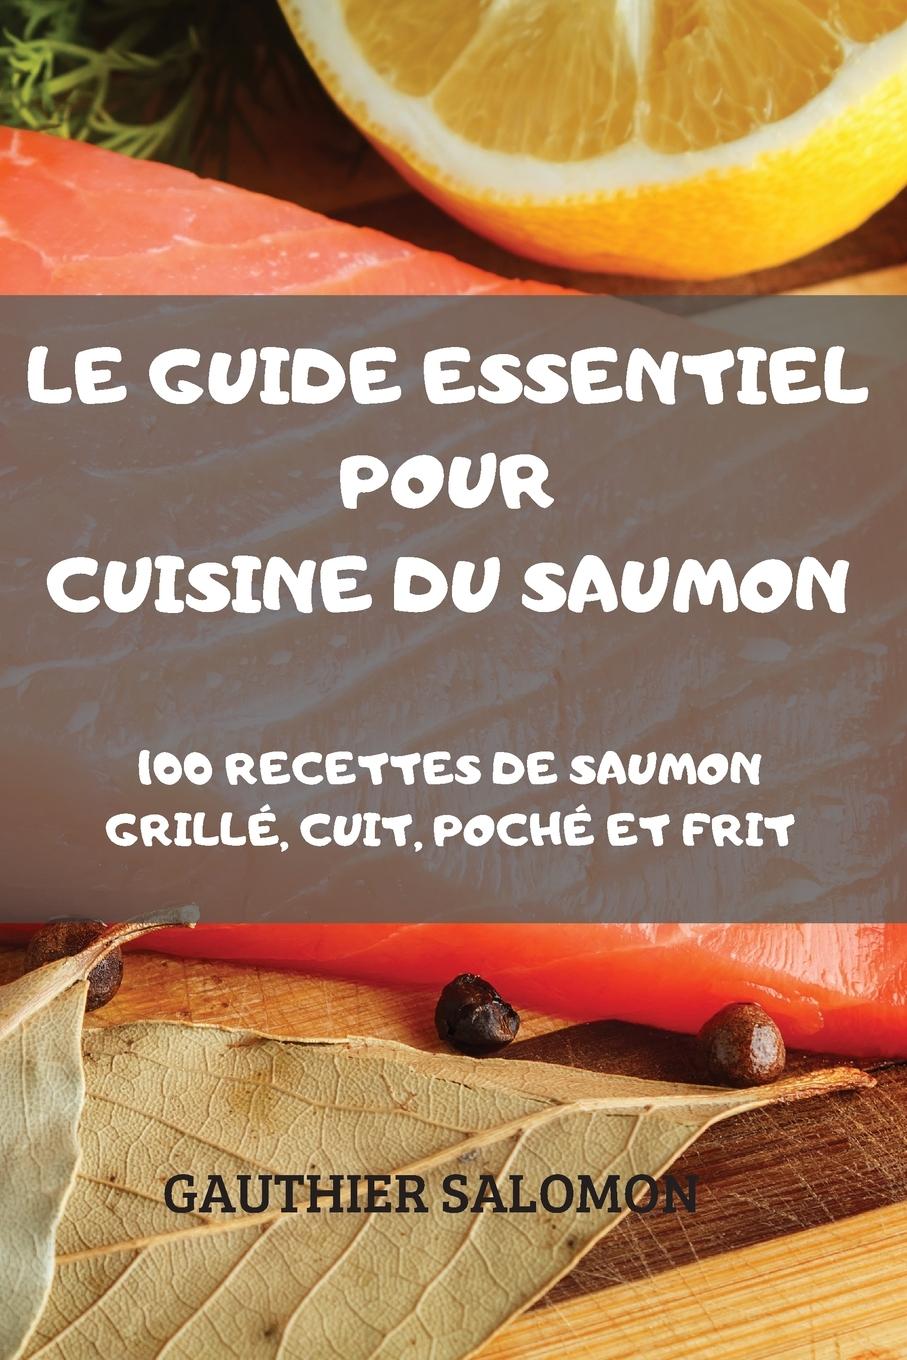 Kniha Guide Essentiel Pour Cuisine Du Saumon 